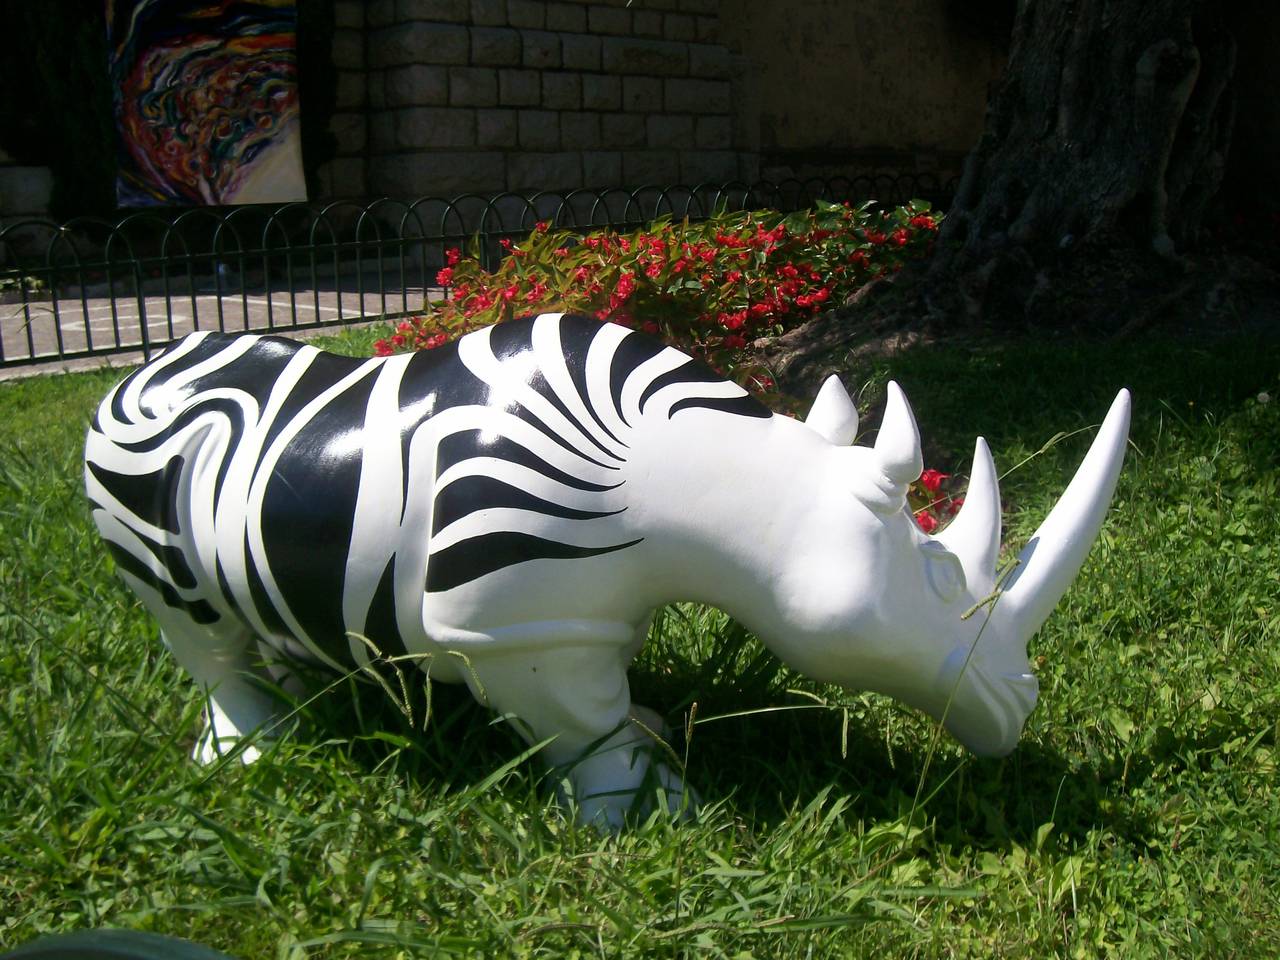 Rhinozebros est une sculpture en résine réalisée par Patrick Schumacher, un artiste contemporain français. Cette sculpture représente un rhinocéros paré d'une peau de zèbre. 
